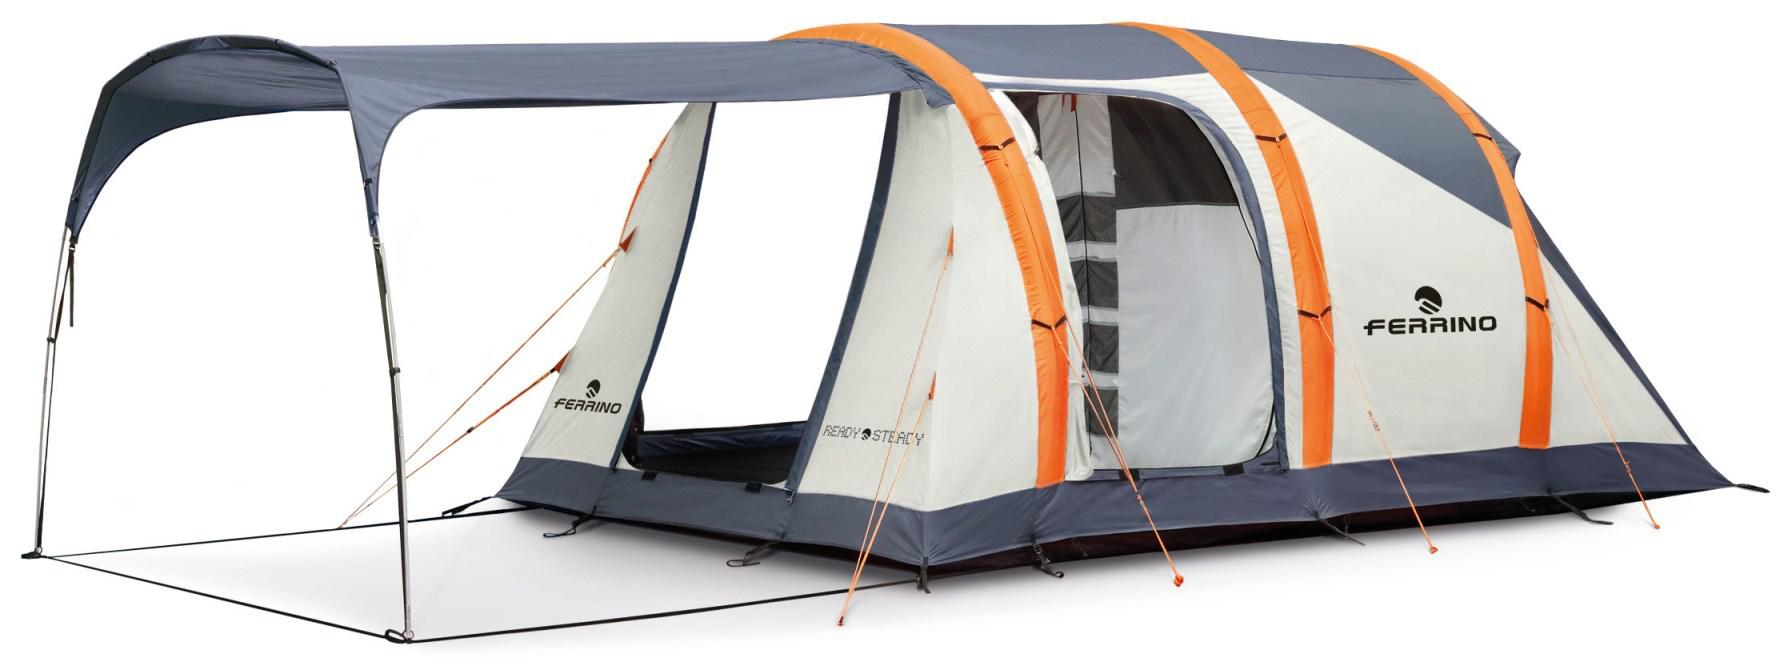 Bien choisir son matériel de camping - Blog des voyageurs